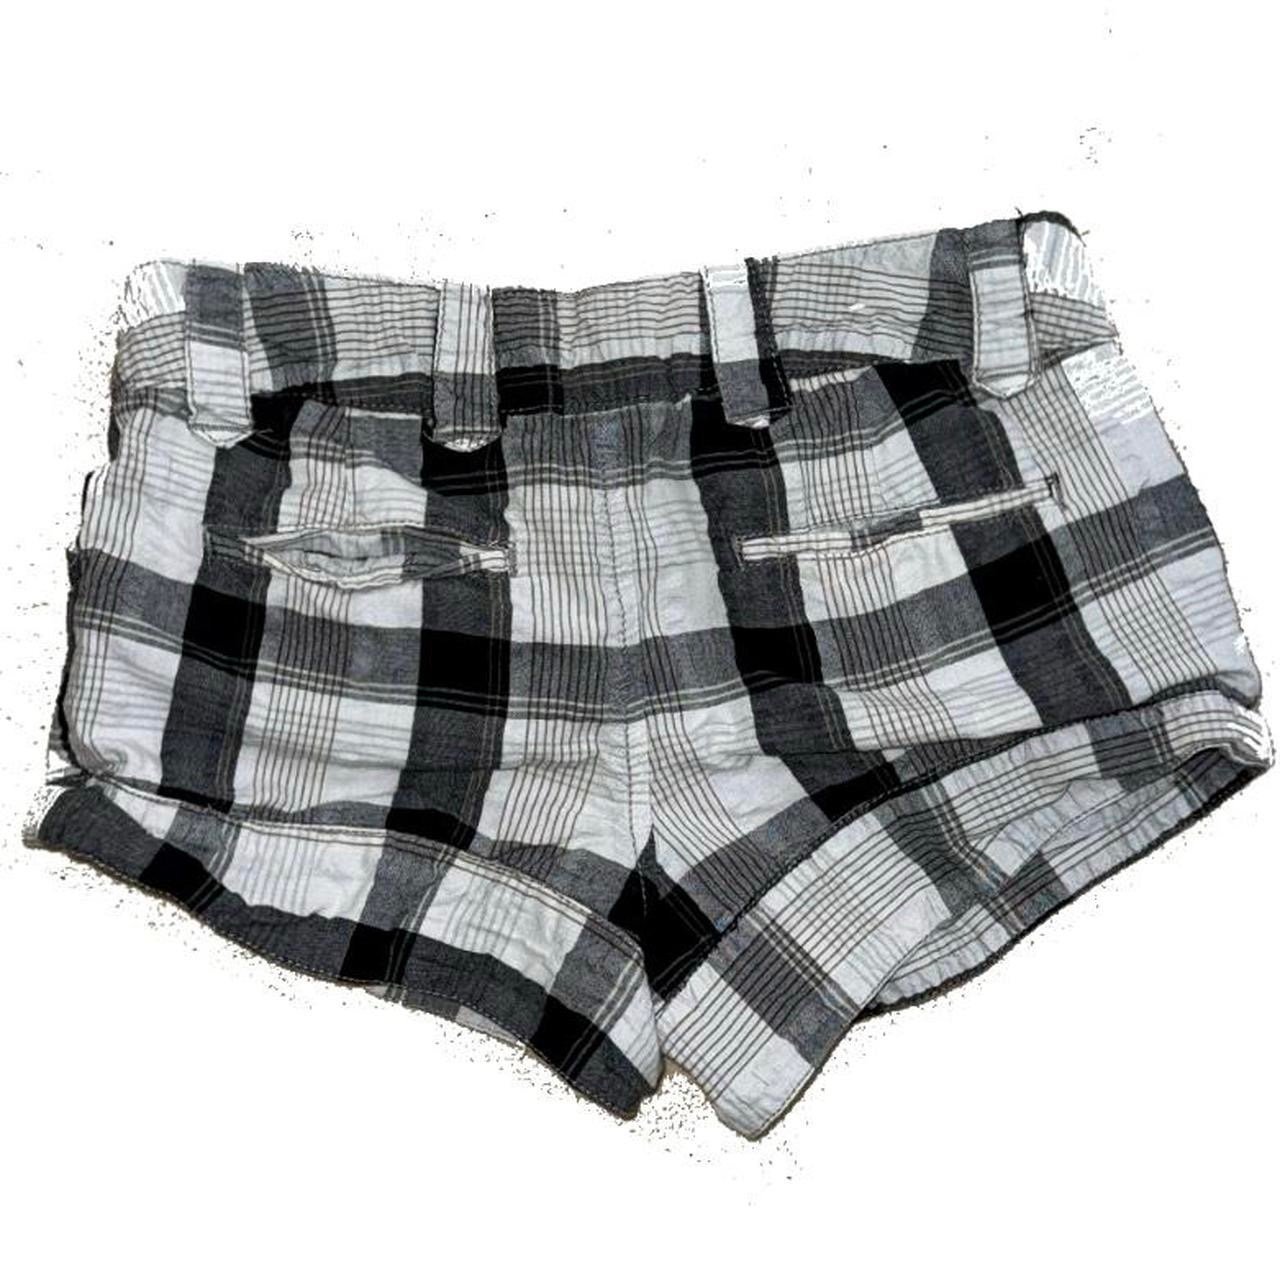 where to buy  Plaid black and gray mini shorts kWWtQg5qw no tax